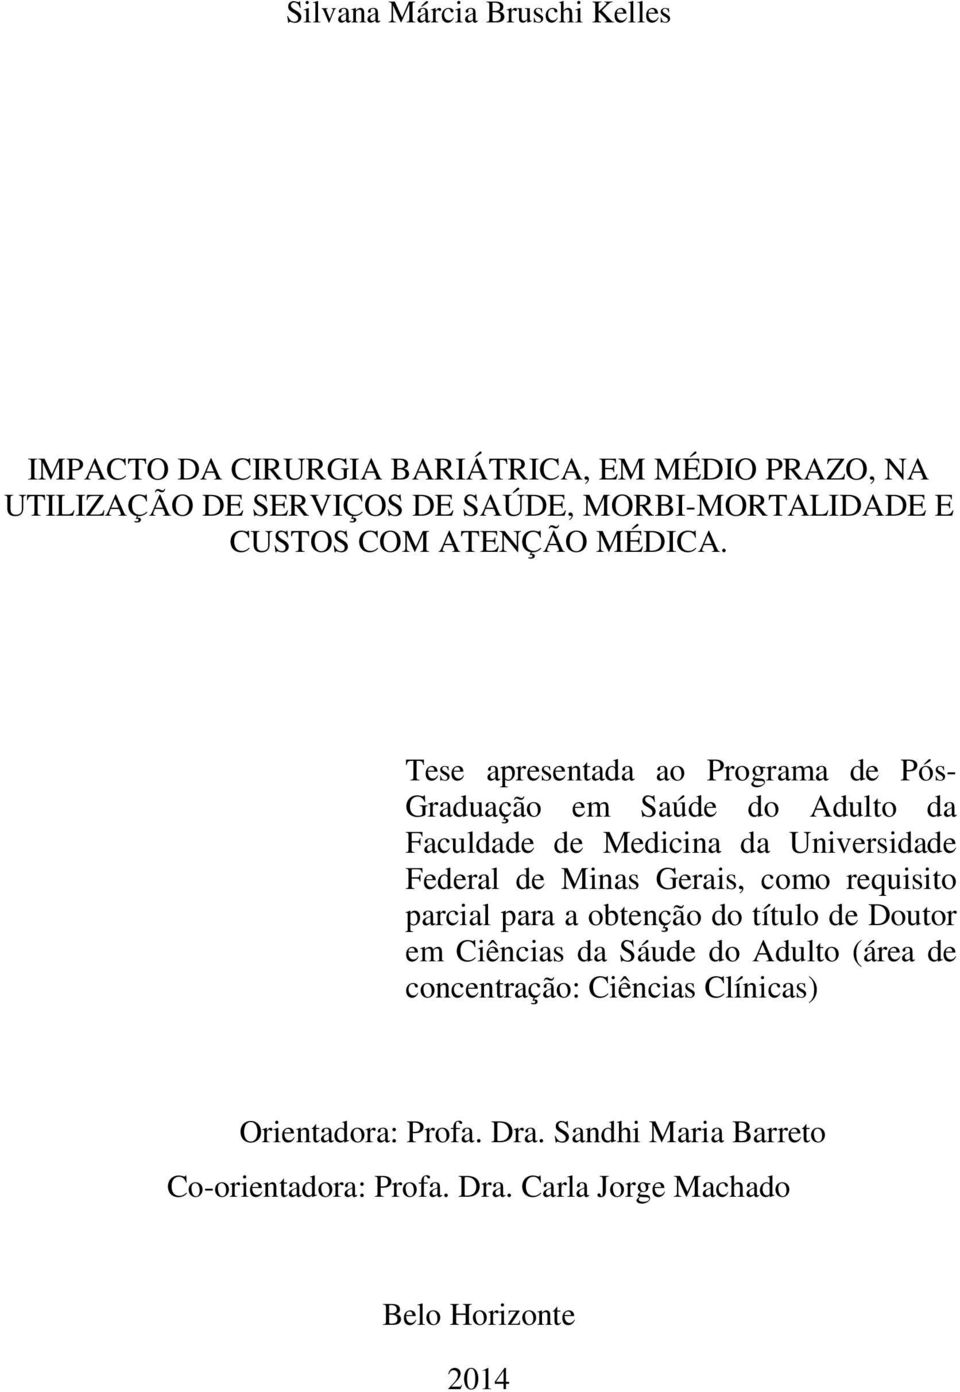 Tese apresentada ao Programa de Pós- Graduação em Saúde do Adulto da Faculdade de Medicina da Universidade Federal de Minas Gerais,